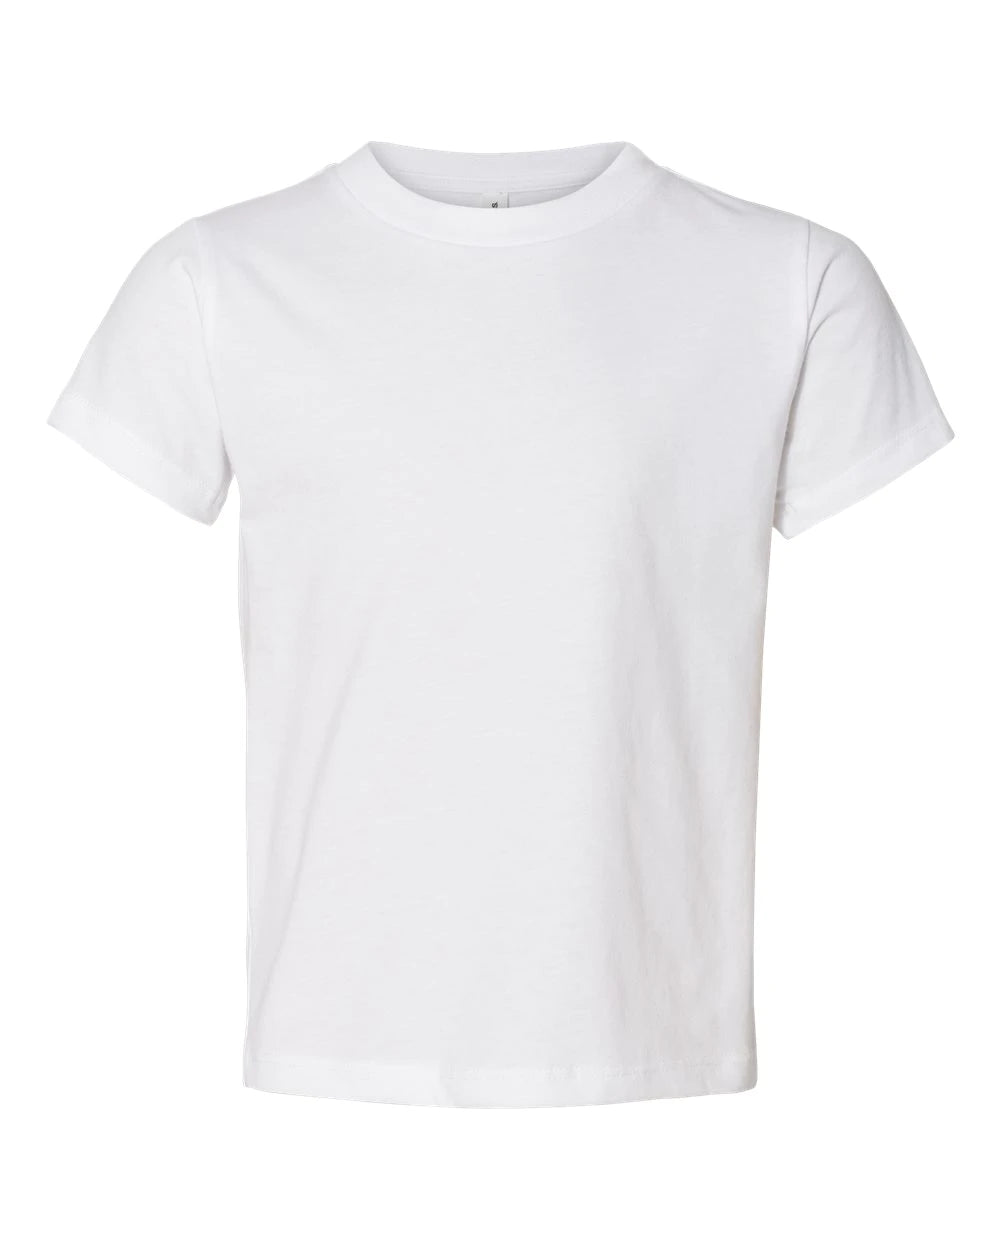 Youth WHITE Unisex Basic (light weight) Sublimation T-shirt